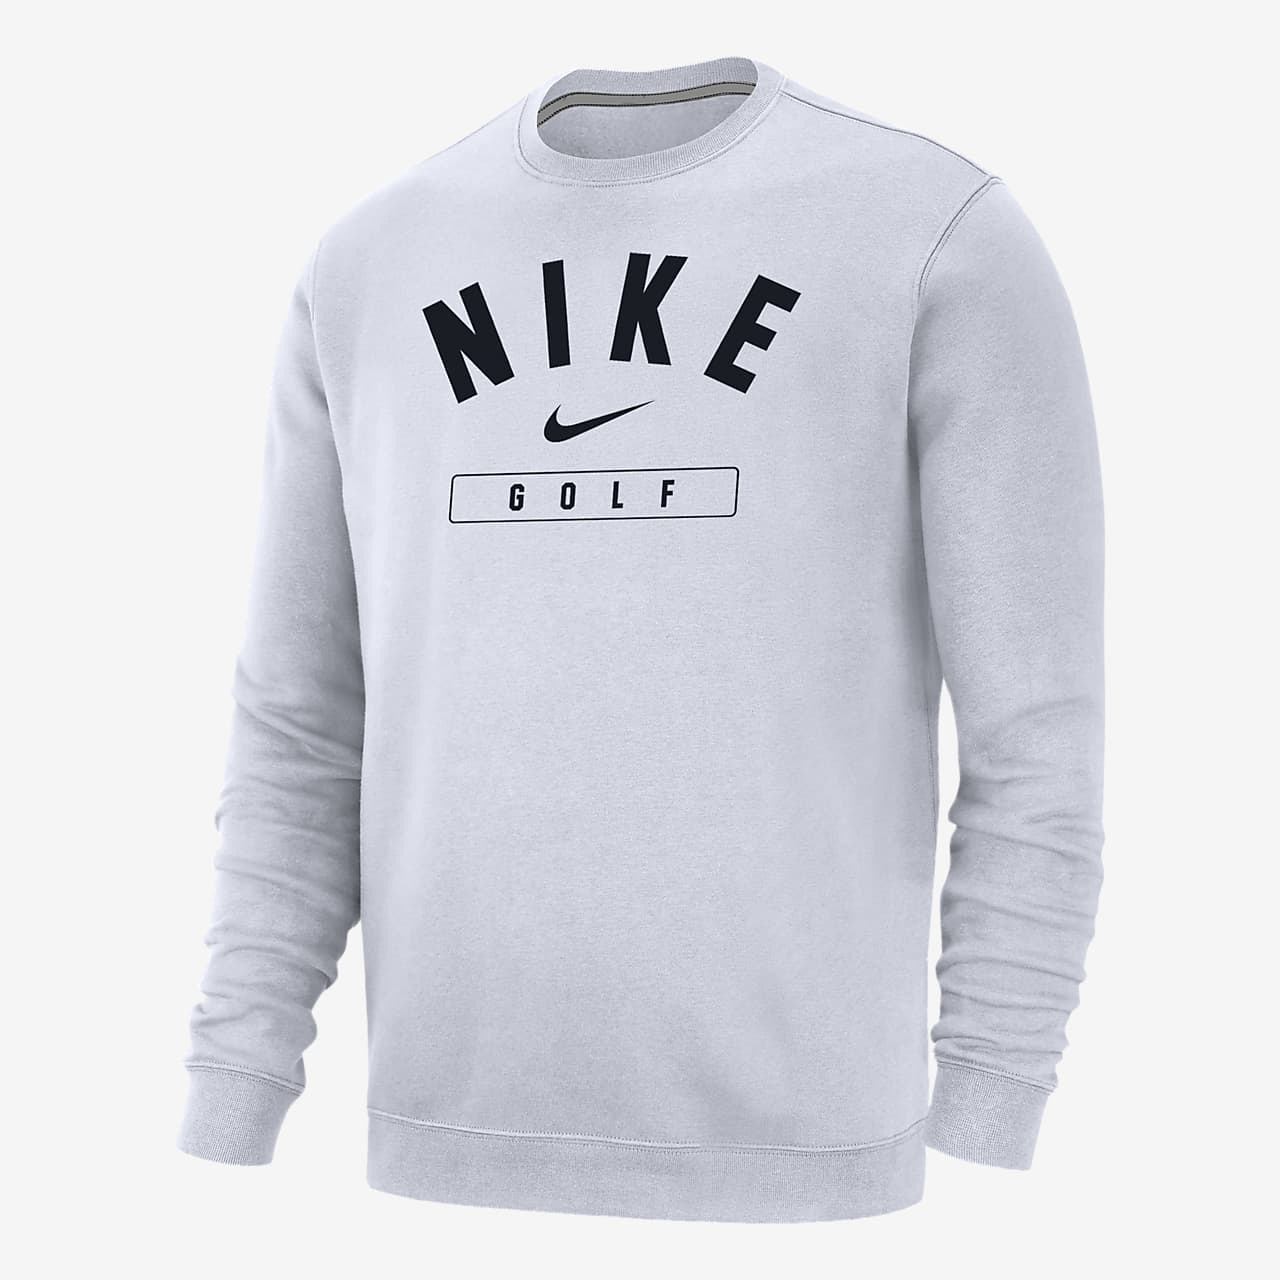 Nike Golf Men's Crew-Neck Sweatshirt